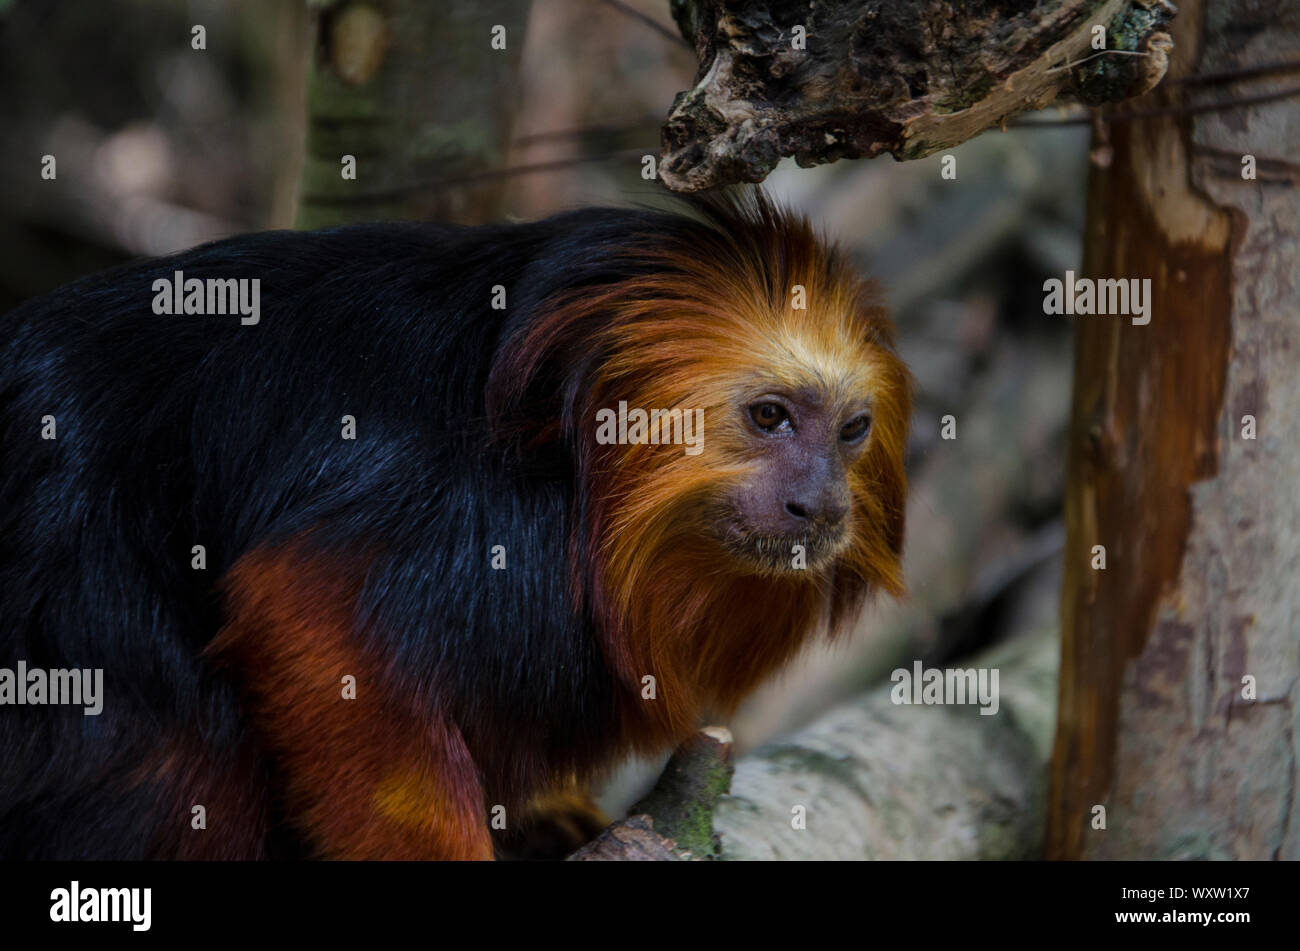 Golden Lion Tamarin tête close up dans son habitat. Singe avec les cheveux rouges et noirs de la fourrure. Banque D'Images